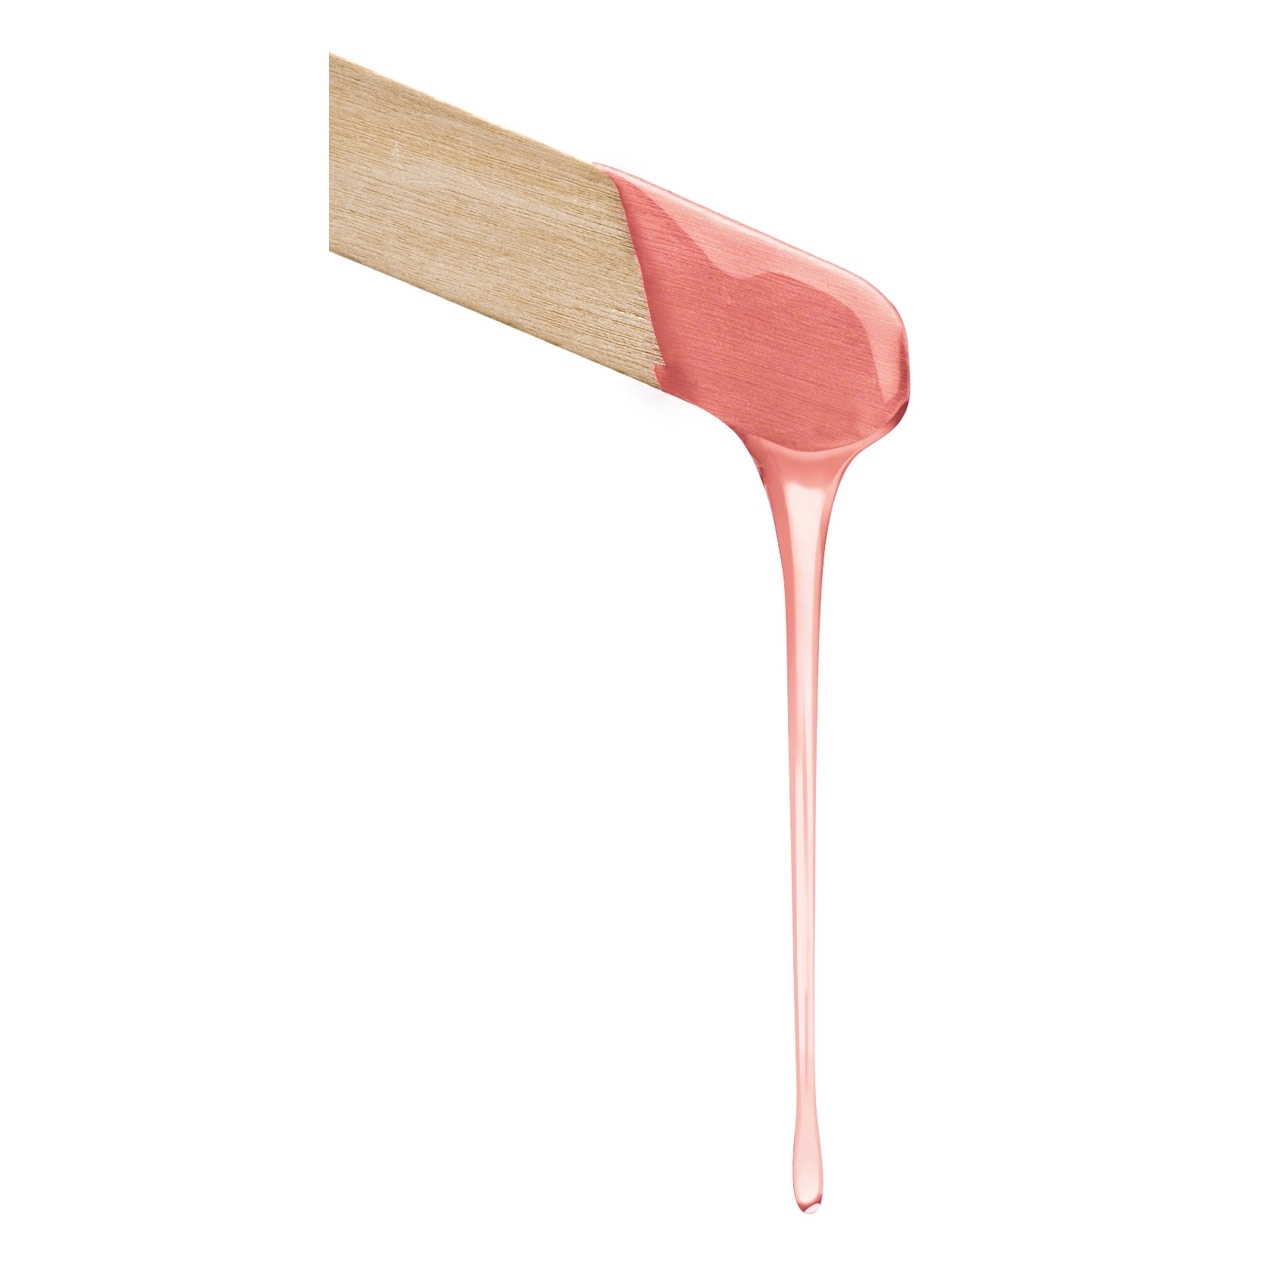 Baehr Wachspatrone Body "Pink" sensible Haut, mit Rollaufsatz groß 100 ml